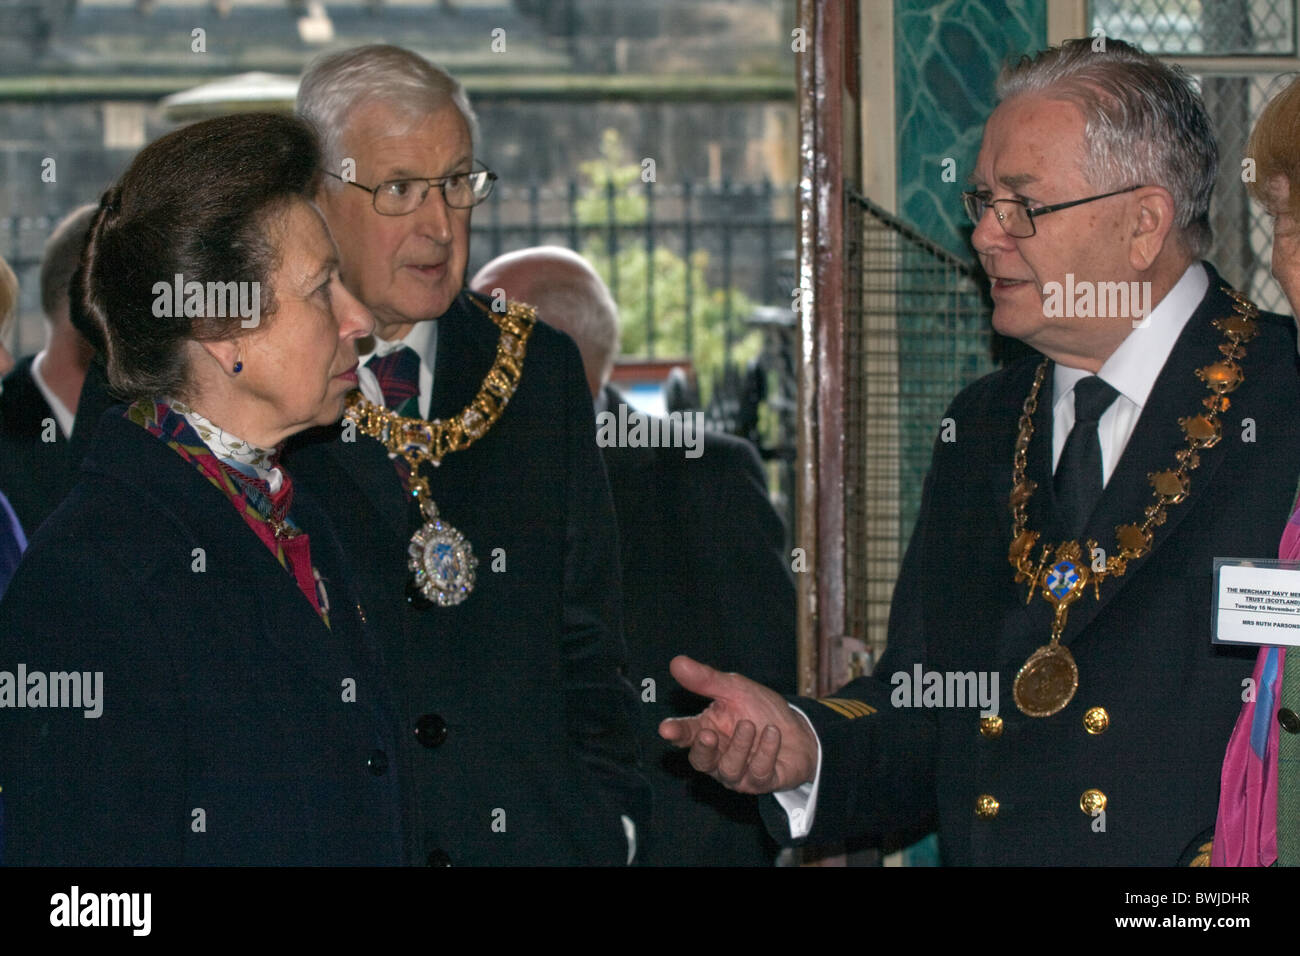 Son Altesse Royale la princesse Anne, assiste à Edimbourg en 2010 Banque D'Images